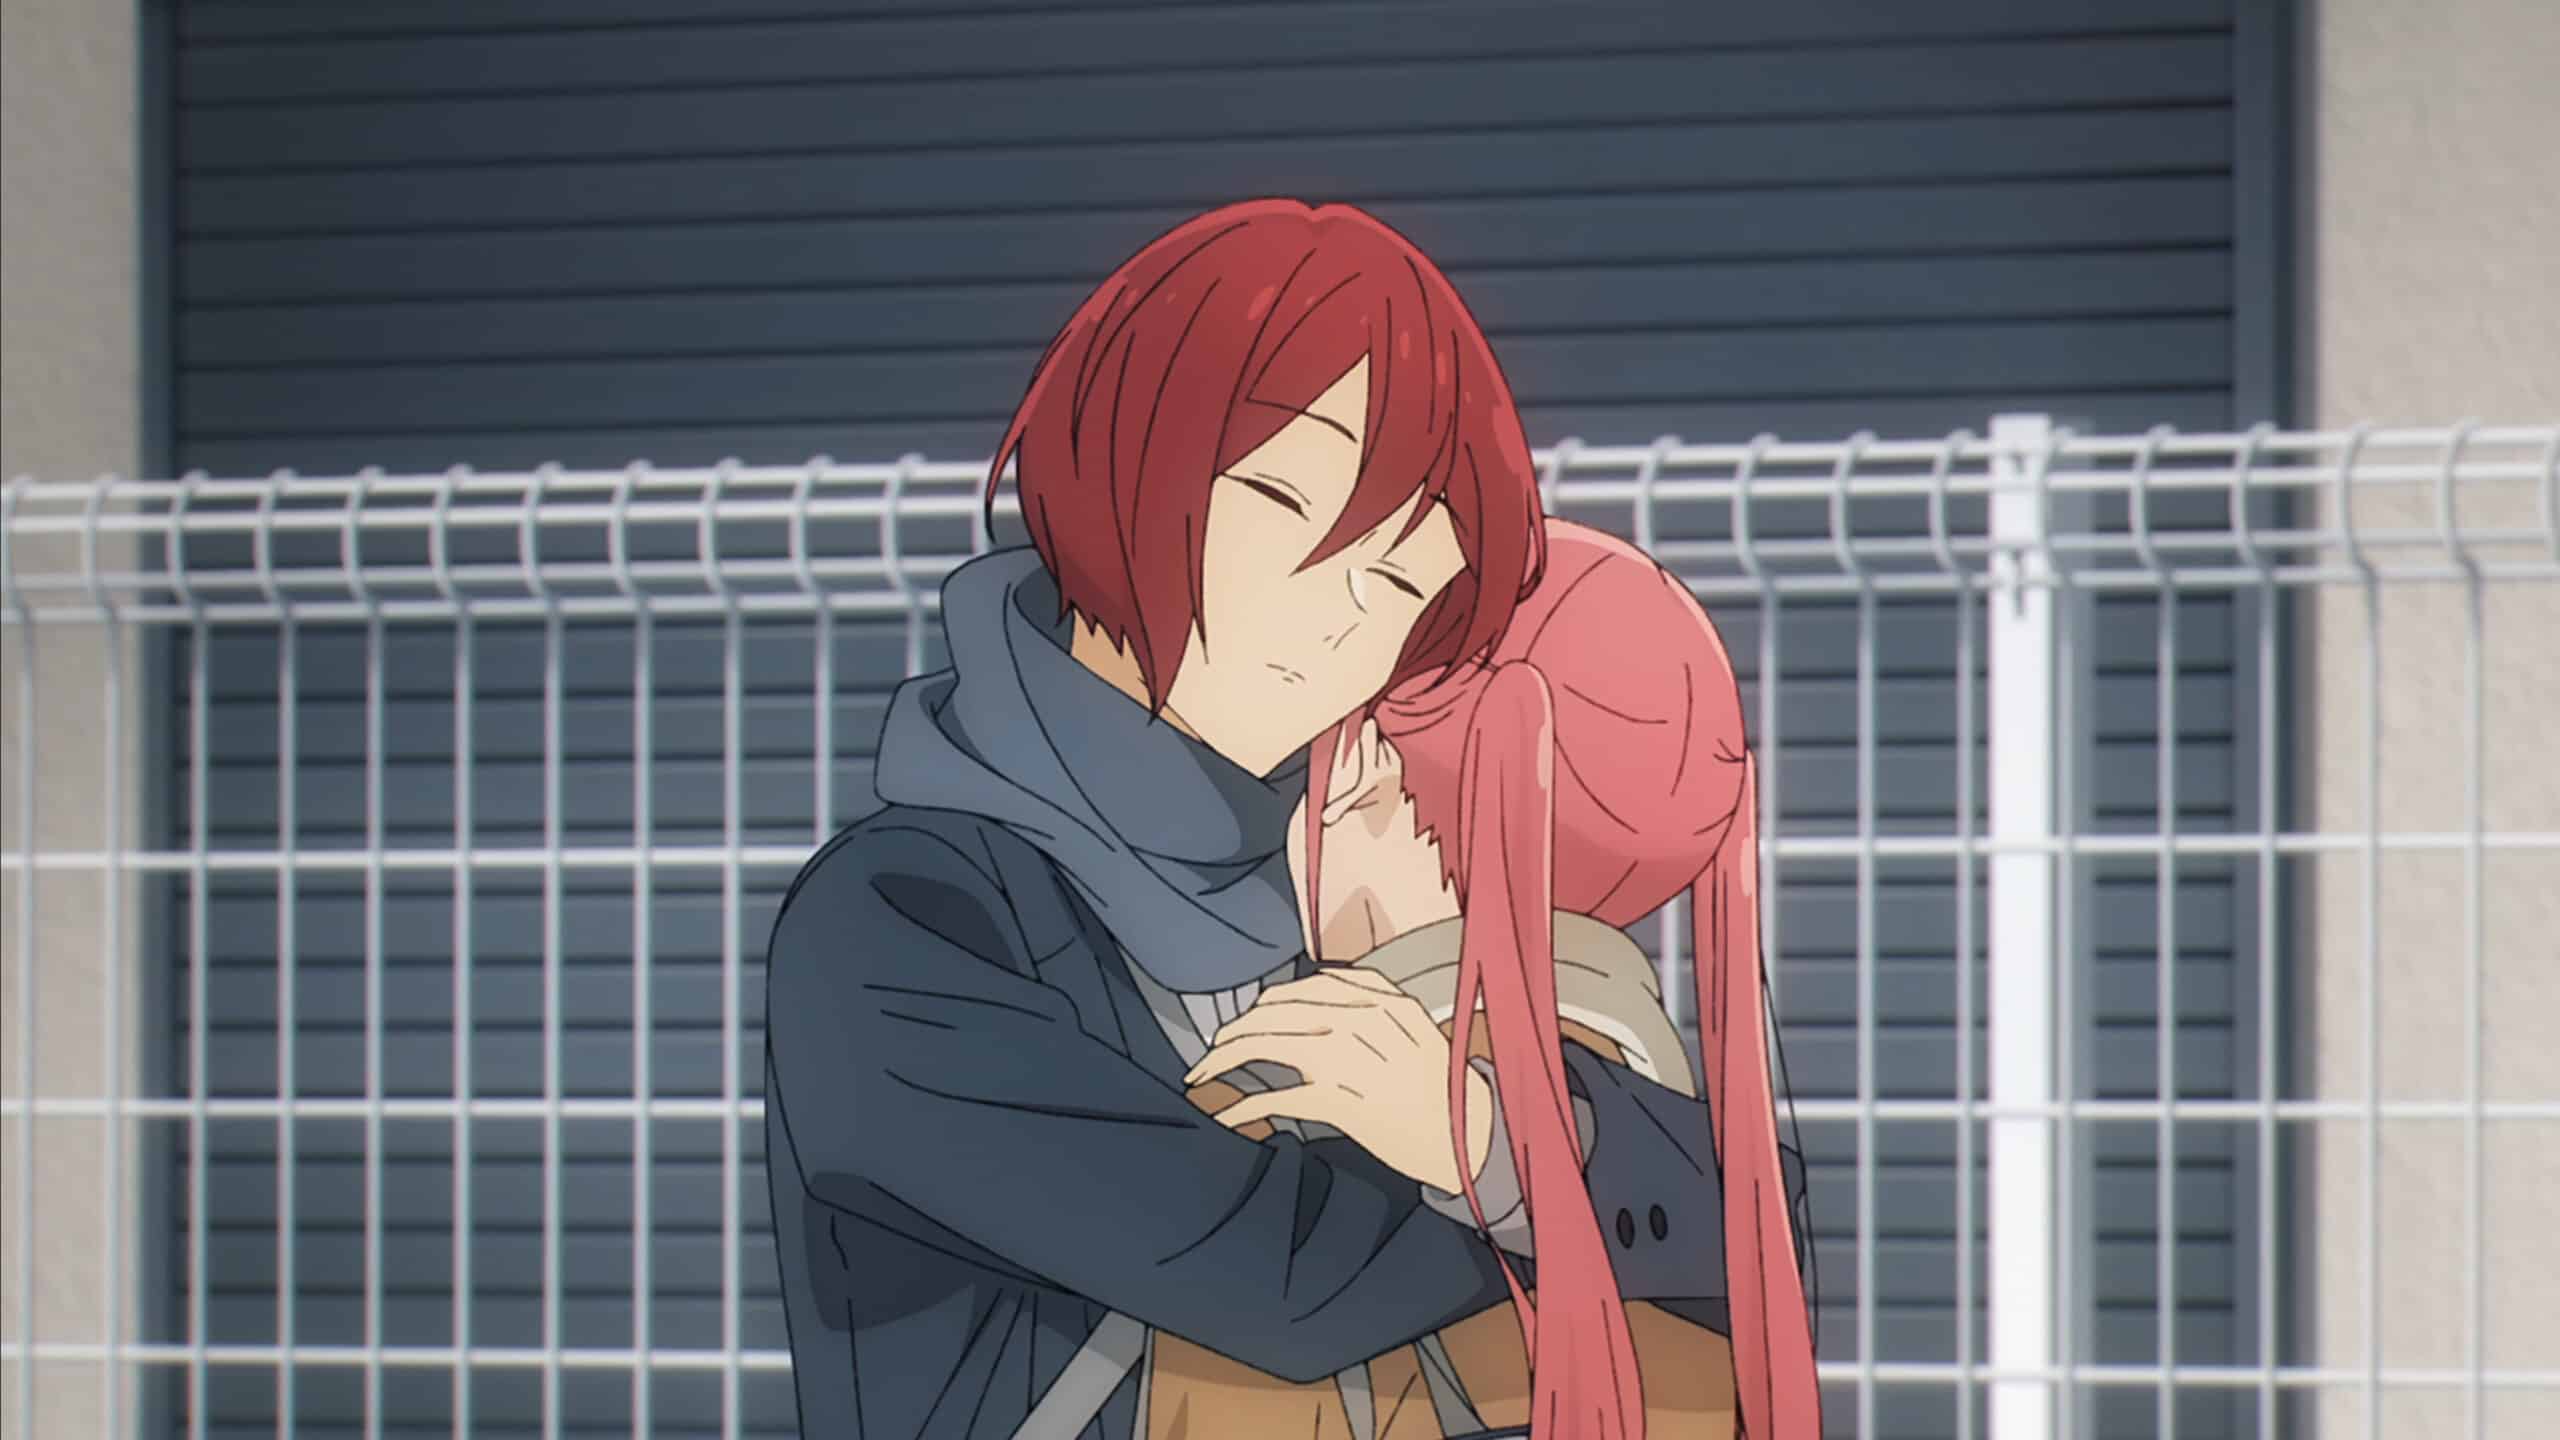 Sengoku (Nobuhiko Okamoto) and Remi (M-A-O) hugging